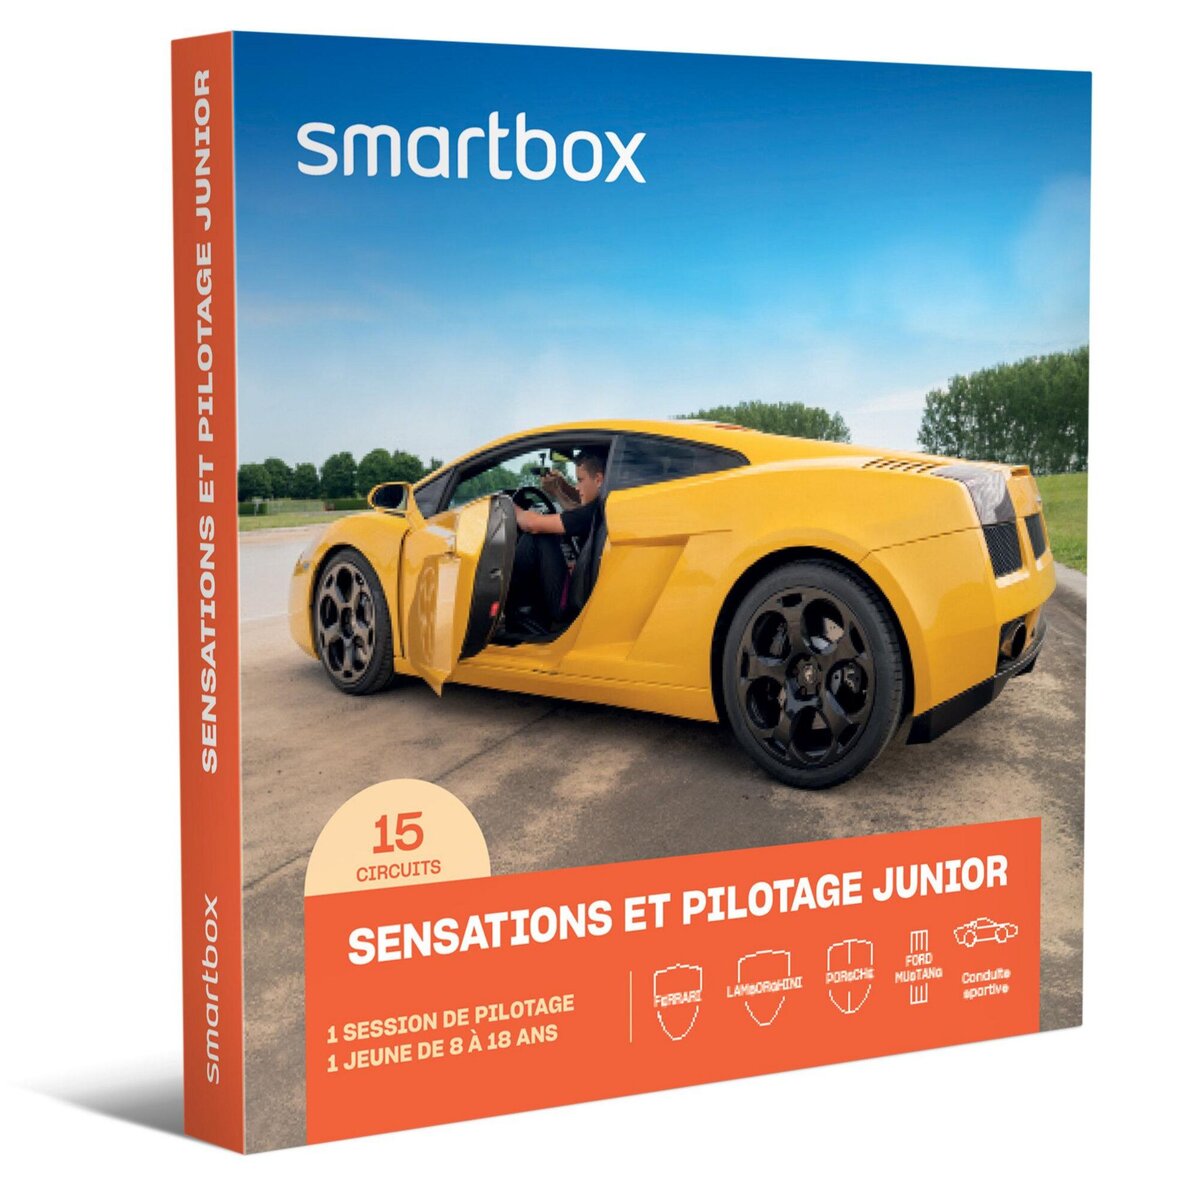 Smartbox Sensations et pilotage junior - Coffret Cadeau Sport & Aventure